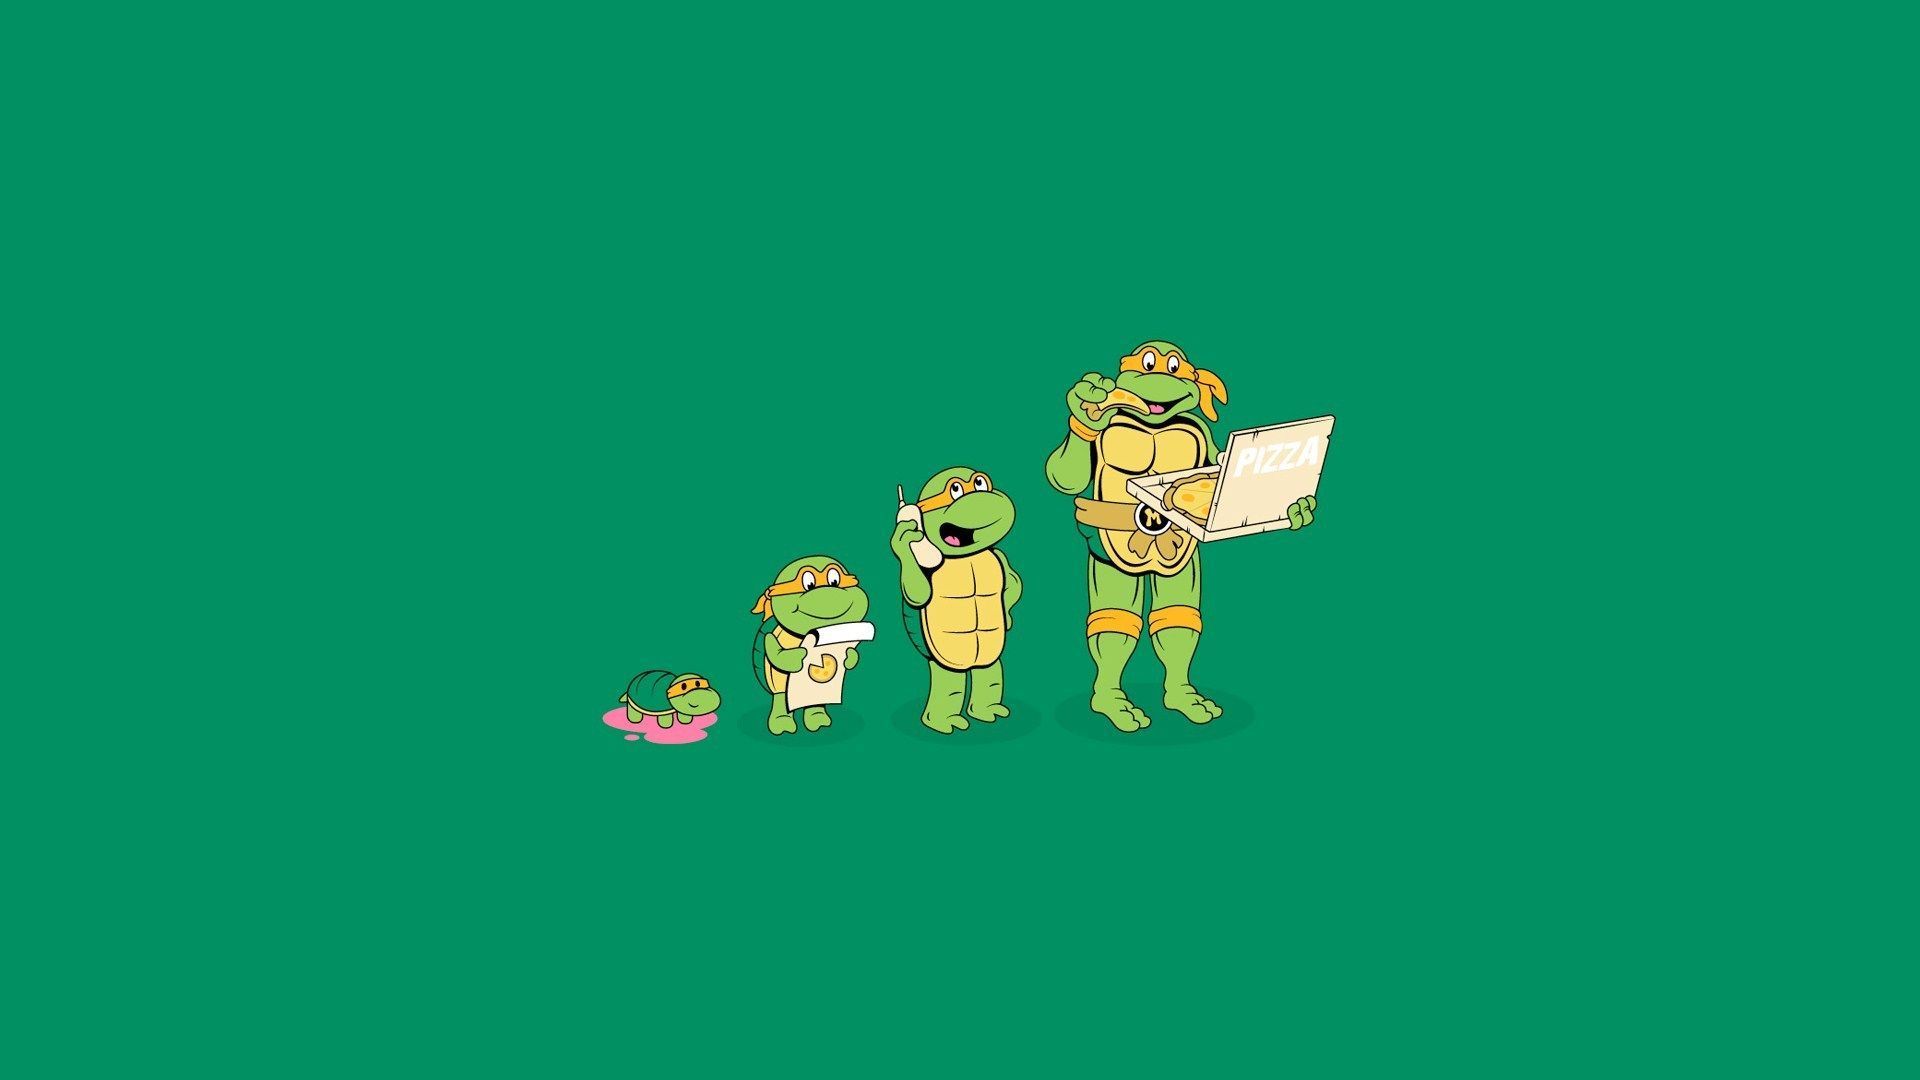 Michelangelo-Teenage-Mutant-Ninja-Turtles.jpg